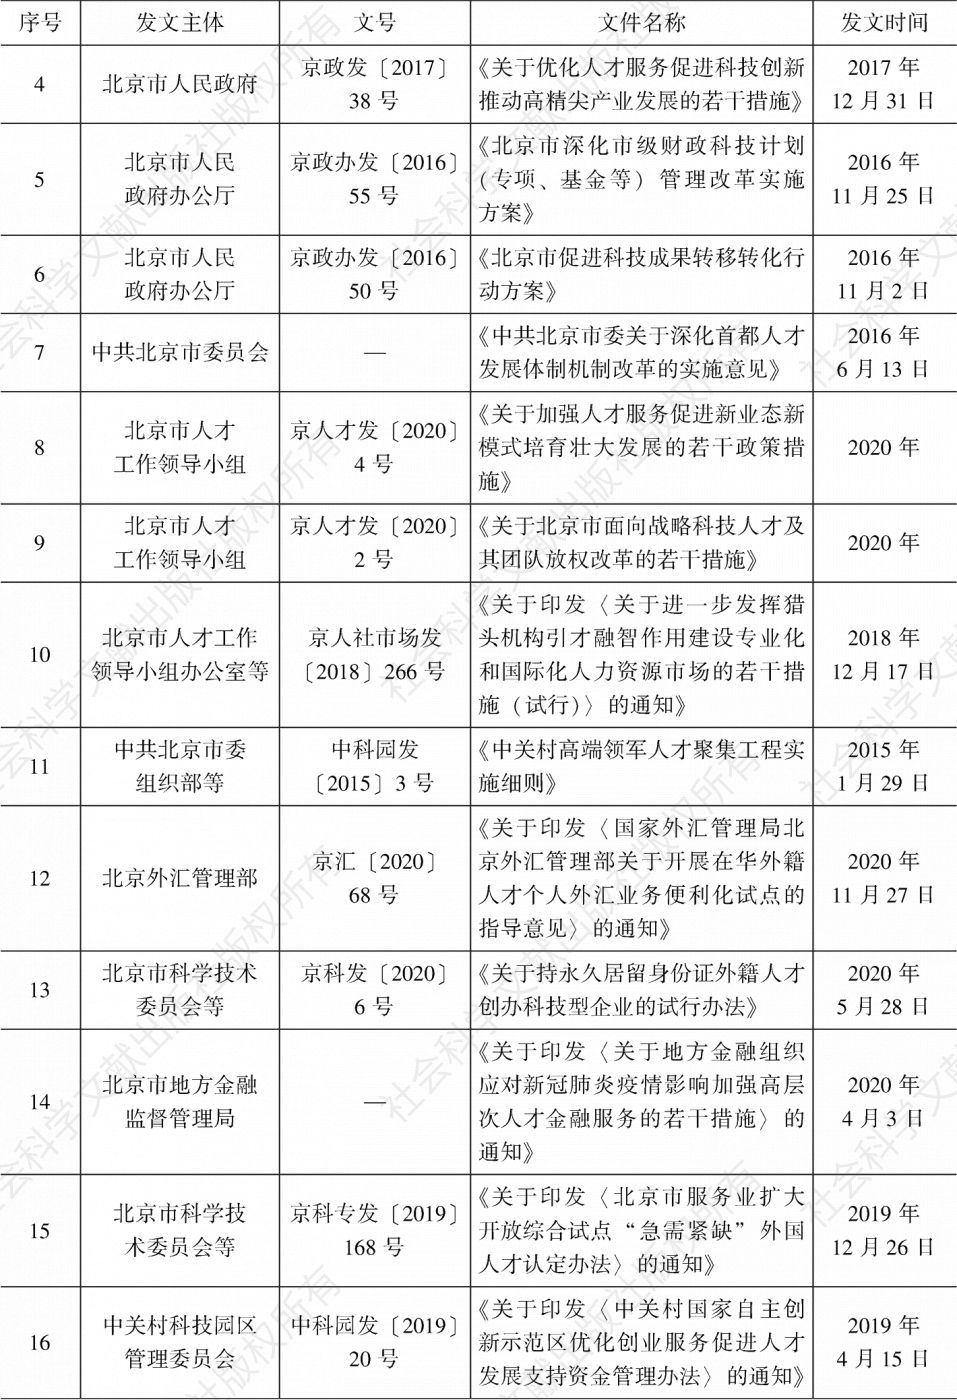 表1 北京市人才政策清单-续表1